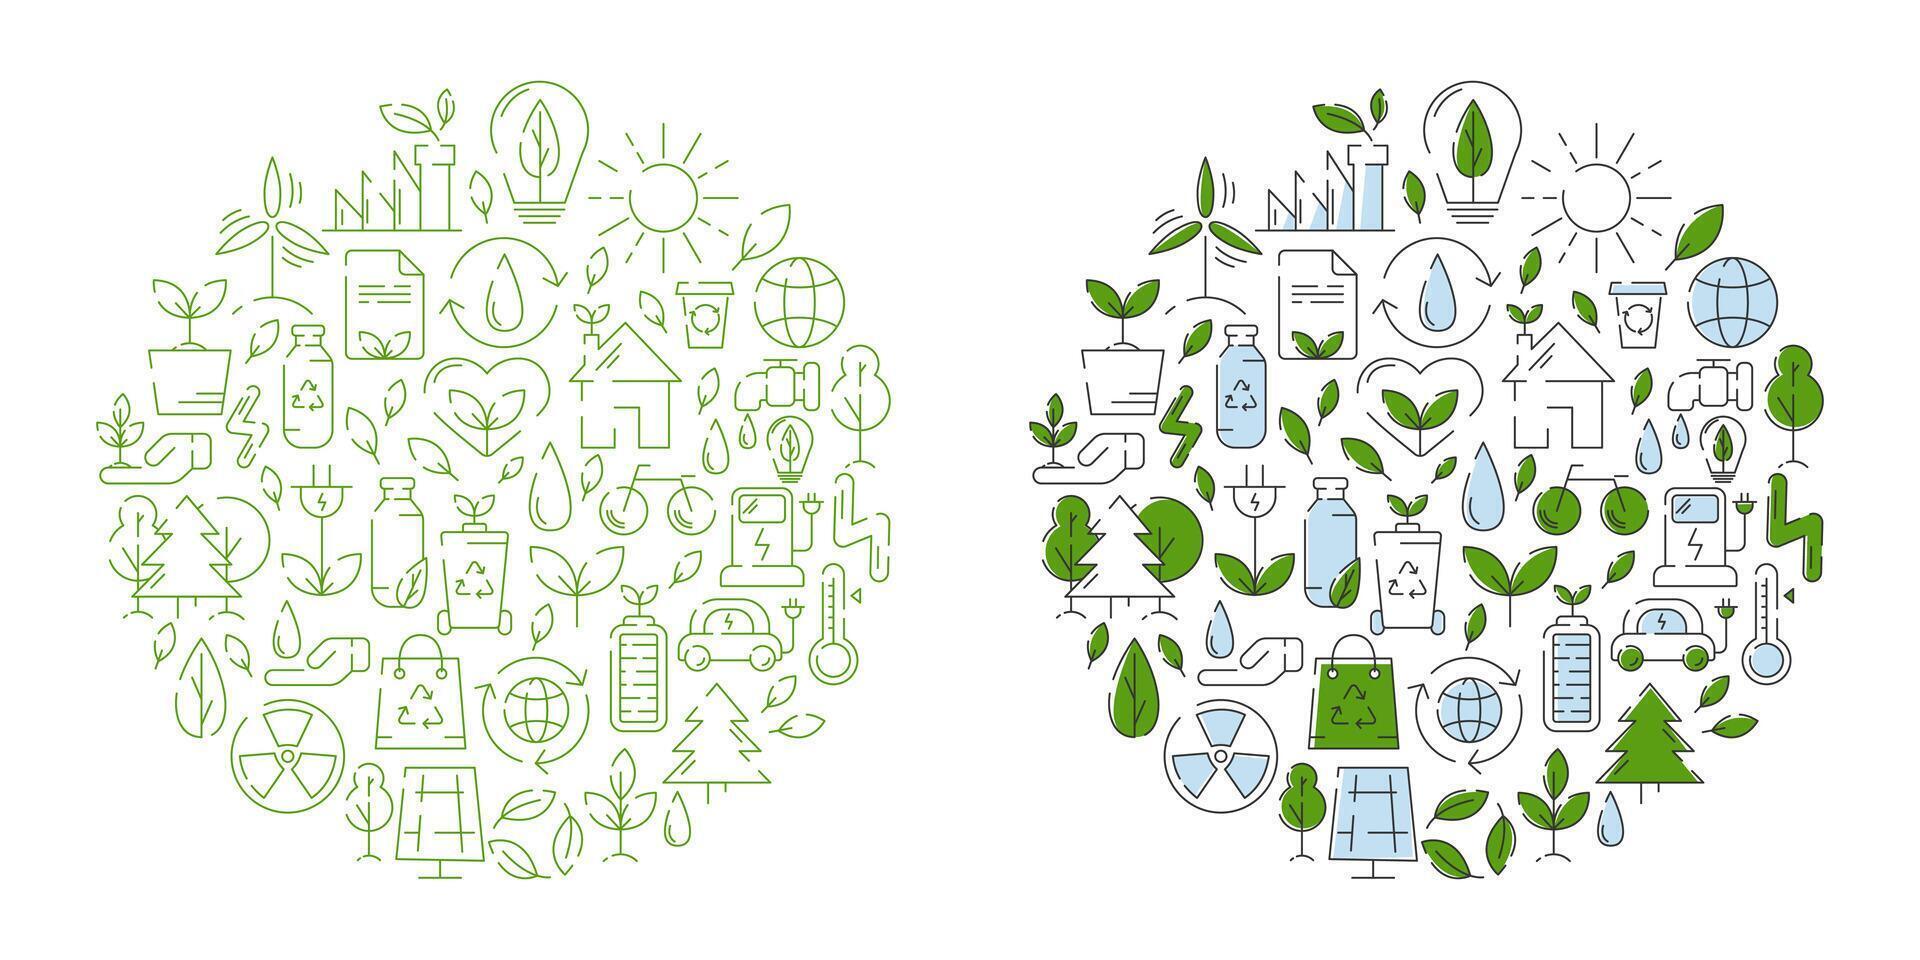 Ökologie, Linie Symbole Design, runden form. Ökologie Umgebung Verbesserung, Nachhaltigkeit, recyceln, verlängerbar Energie, Natur. Öko freundlich Vektor Illustration. Konzept von Netz Null Emissionen durch 2050.